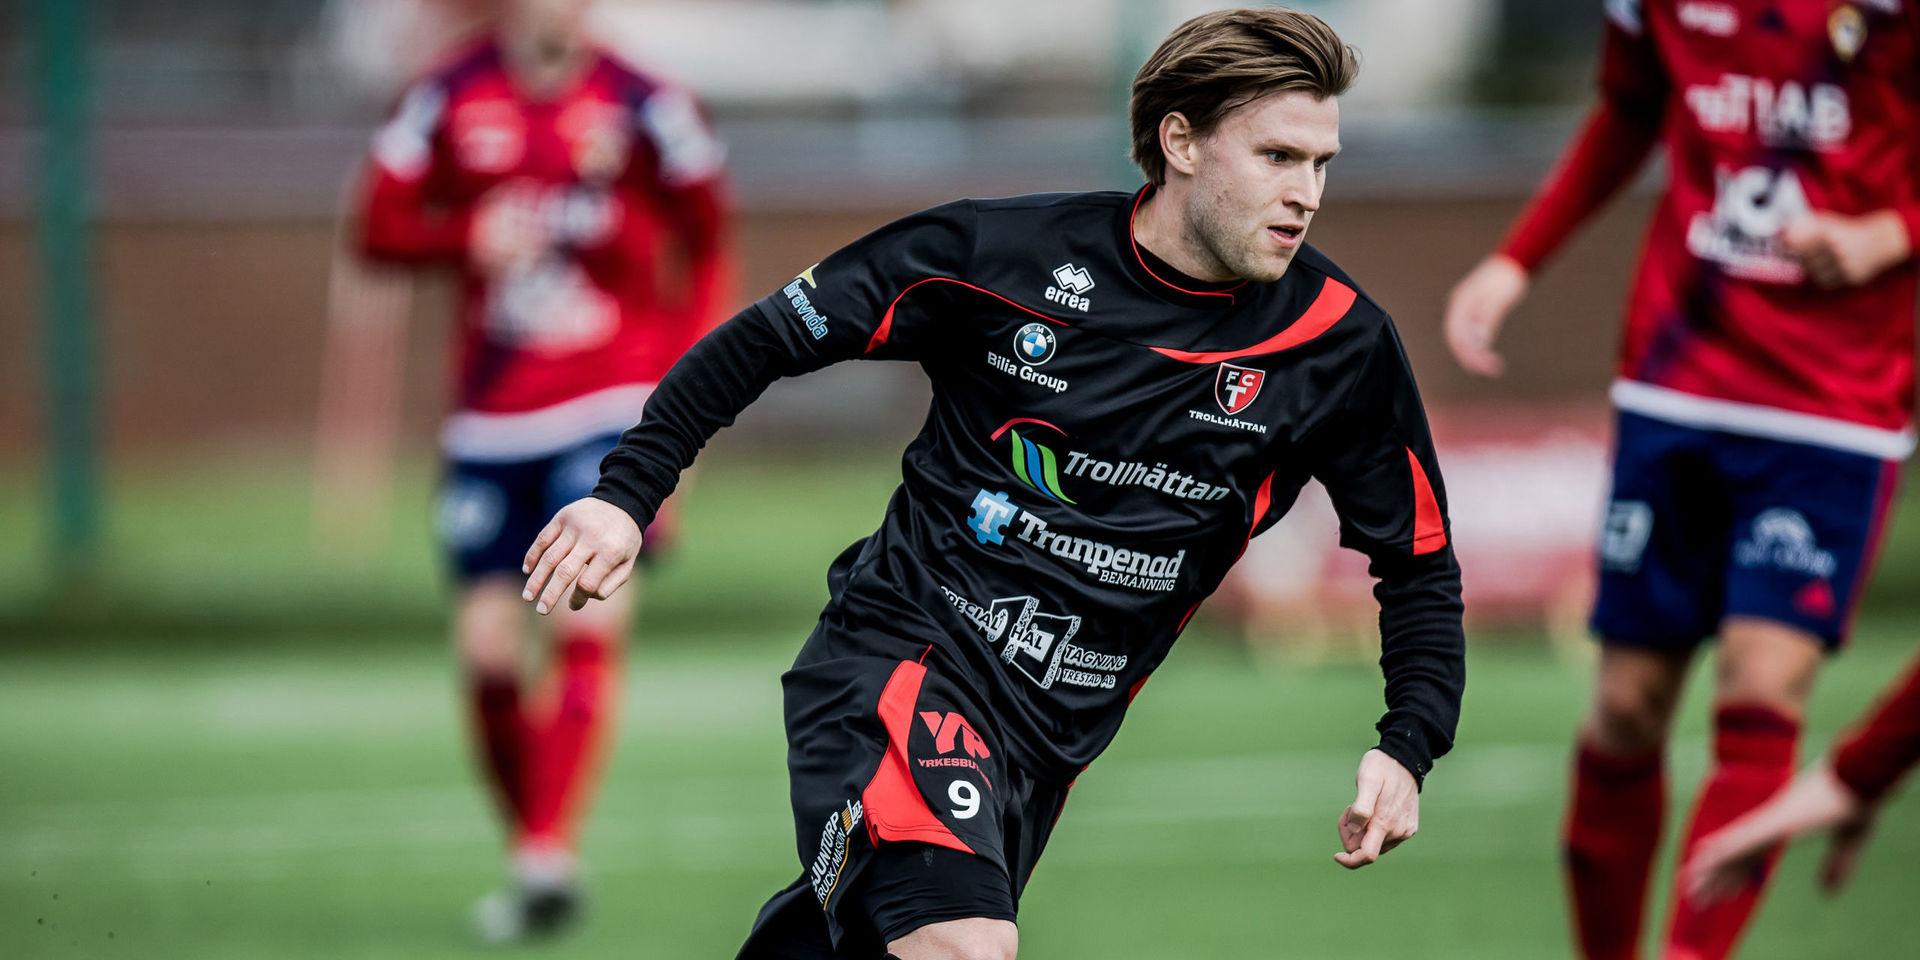 Johan Lundgren fortsätter karriären i Trollhättans FK, en övergång som gör TFK till favorit i Västergötlands division 4 Södra.